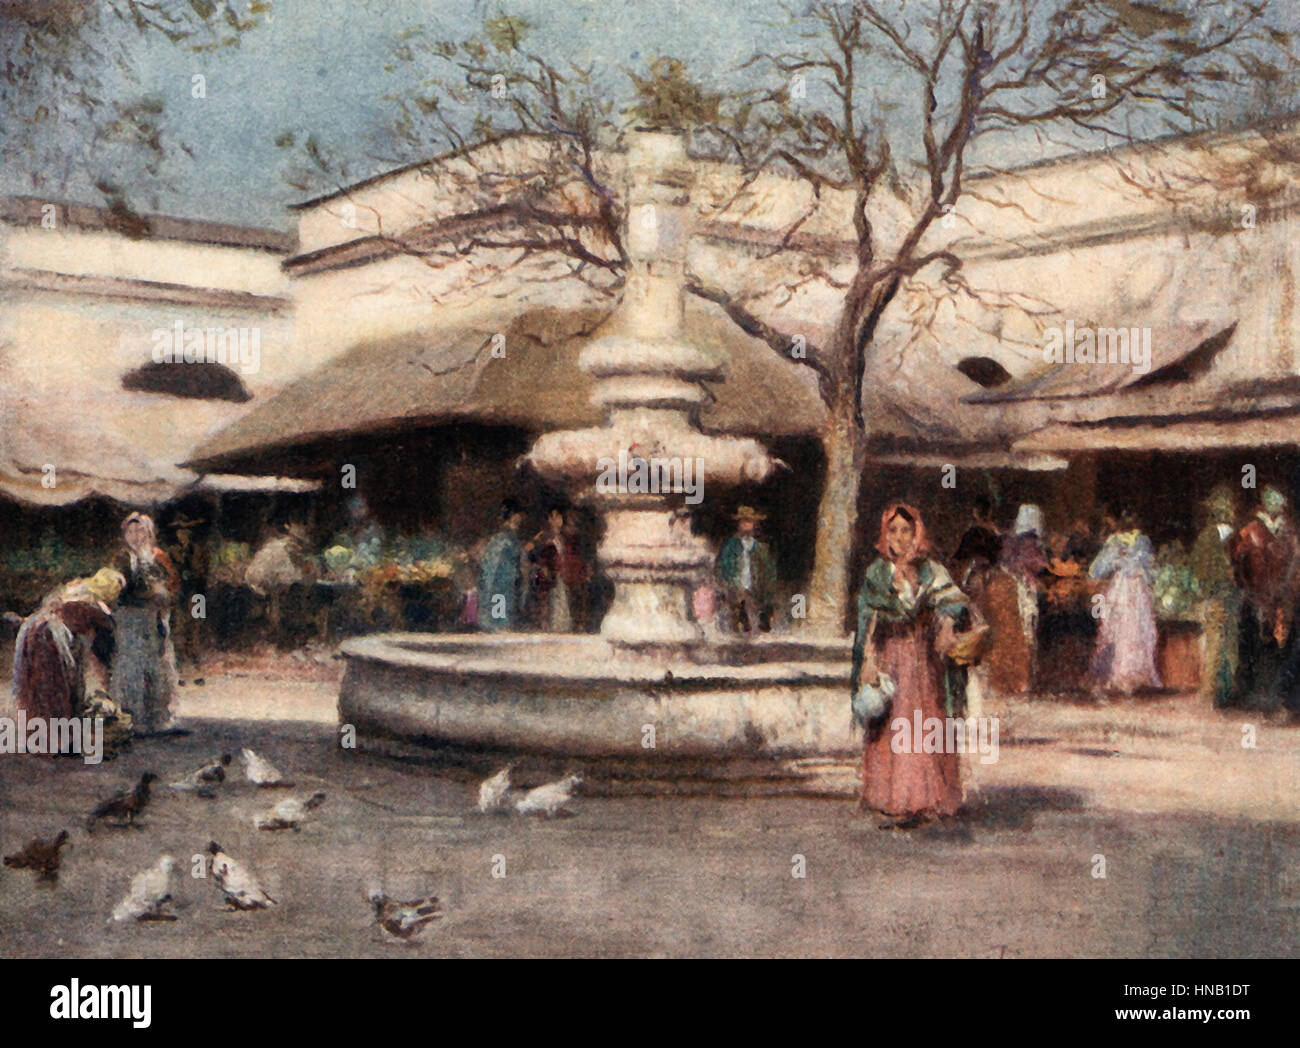 Séville - La Place du marché - l'Espagne, vers 1900 Banque D'Images